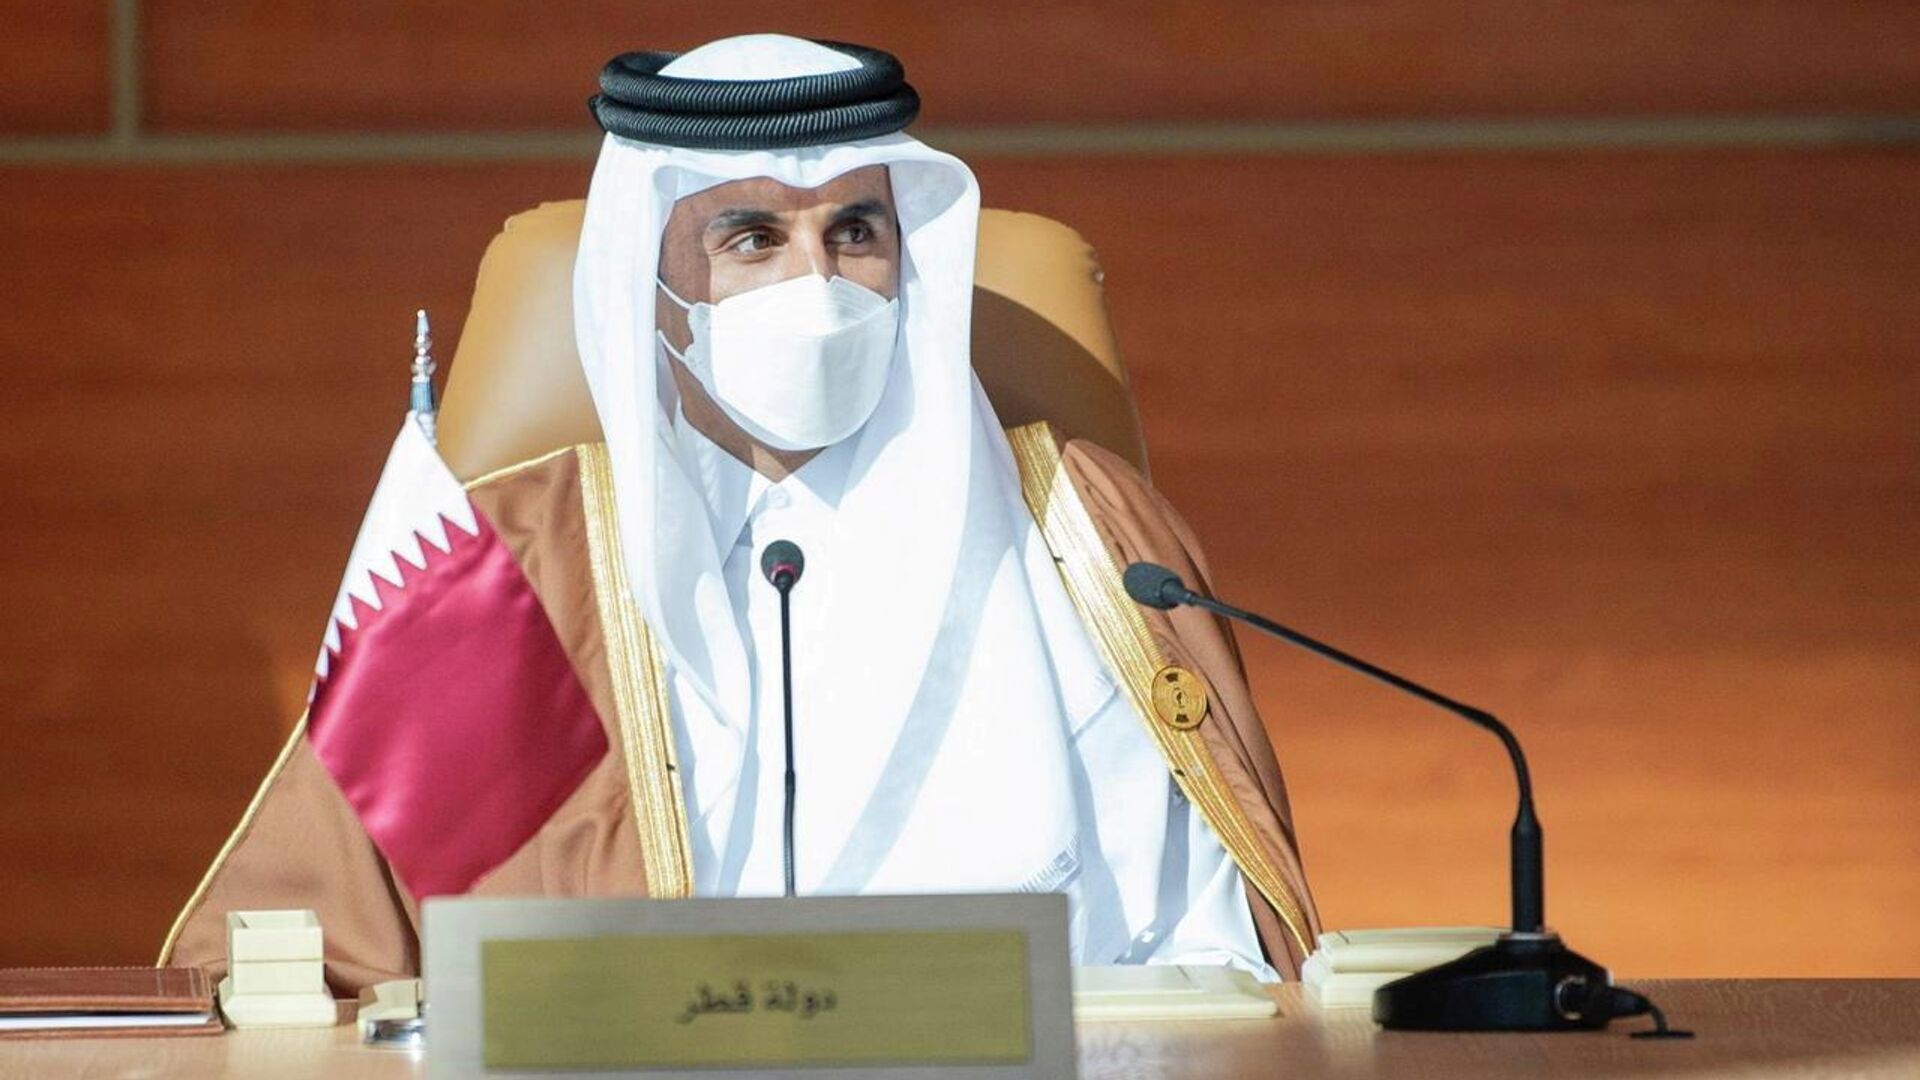 4-й эмир Катара Тамим бин Хамад Аль Тани на 41-м саммите Совета сотрудничества арабских государств Персидского залива в Саудовской Аравии - РИА Новости, 1920, 05.01.2021